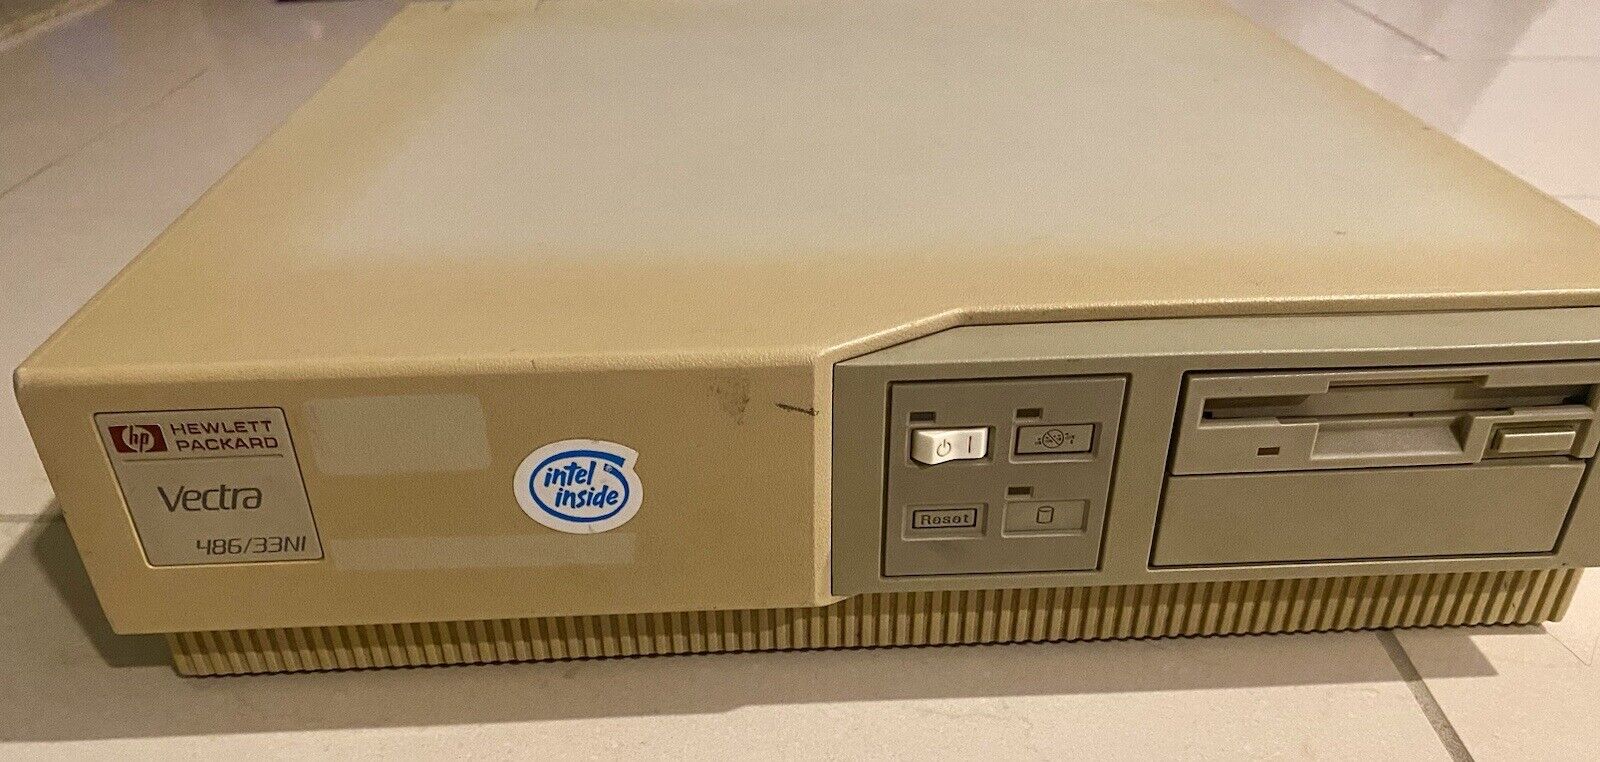 HP Vectra 486/33NI Vintage Retro Computer READ